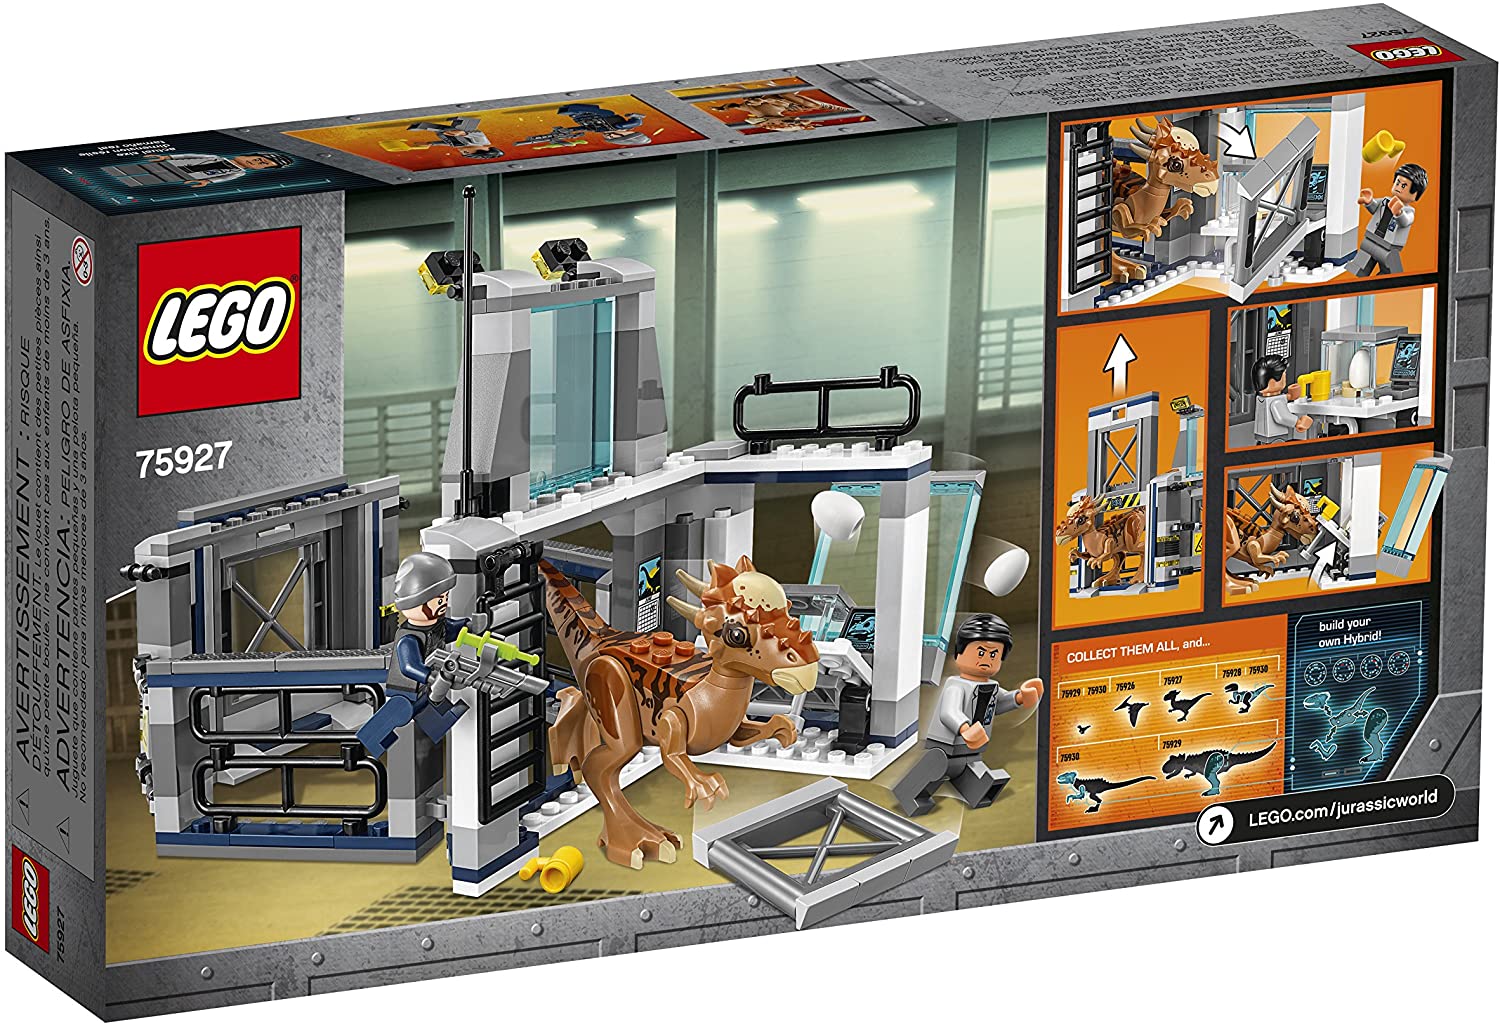 Mantle skyde Vædde LEGO® Jurassic World 75927 Stygimoloch Breakout (222 pieces) – AESOP'S FABLE